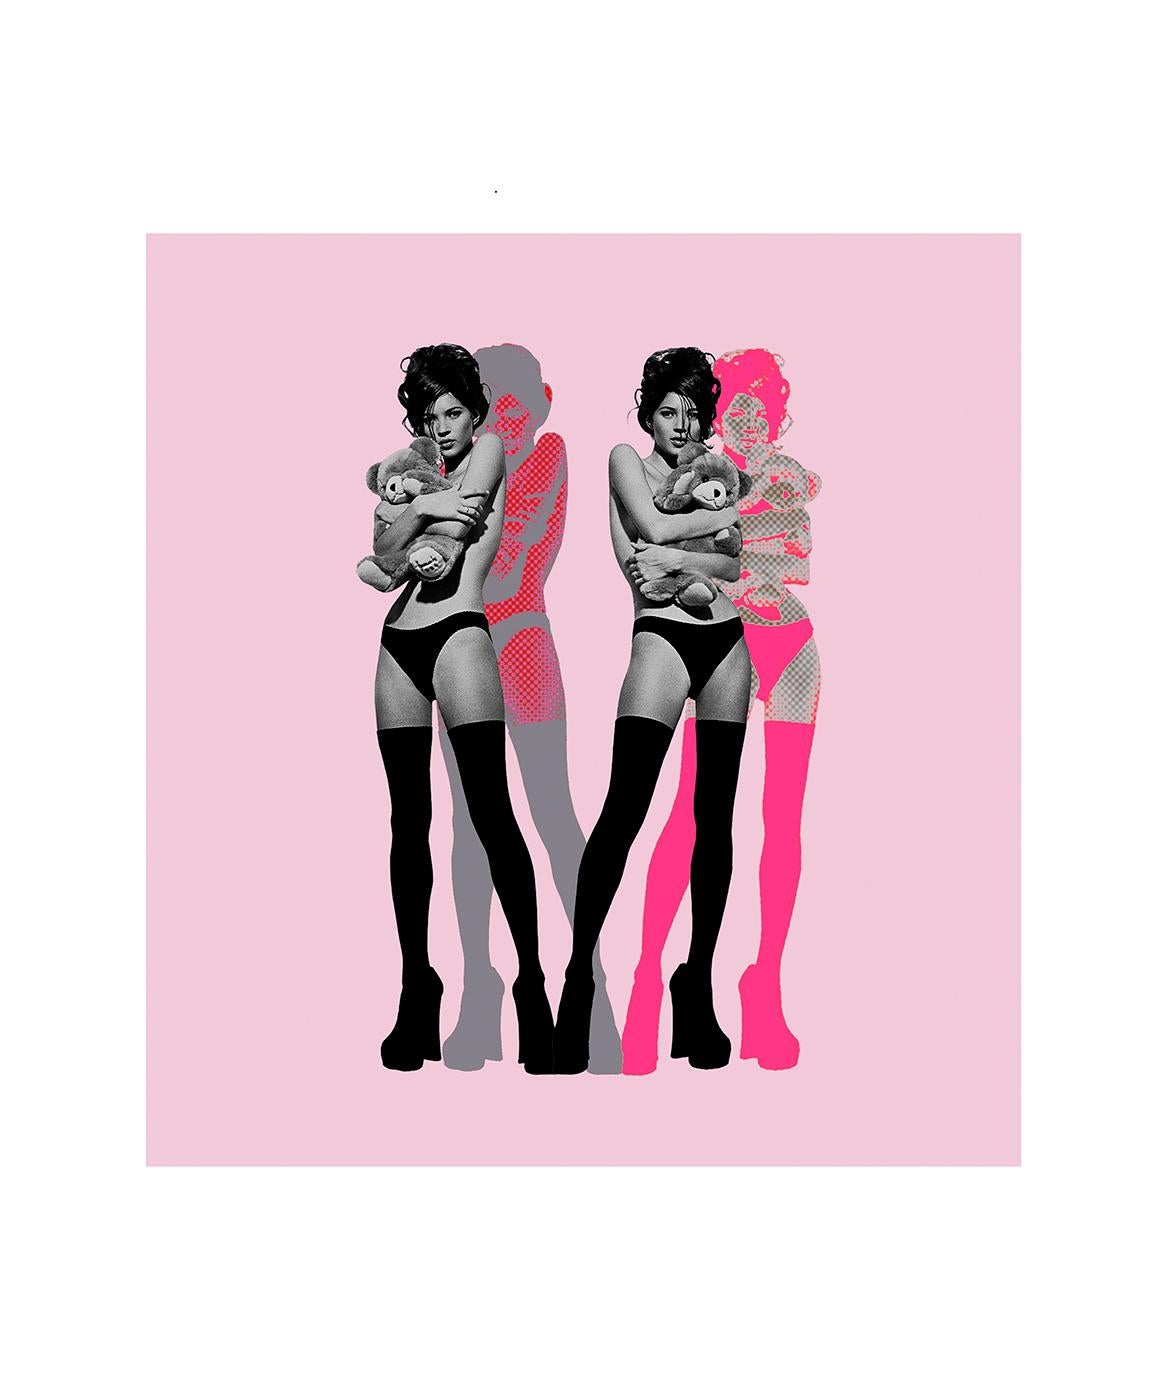 „Twin Kate Moss on Pink“ Fotografie 40 x 36,5 in Auflage von 25 Stück von Kate Garner

Hahnemuhle Fine Art Archivierungspapier

Kate Garner: Sucherin, Sage und Bewahrerin der Identität

Eine durchdachte Auswahl der wichtigsten Werke von Kate Garner,